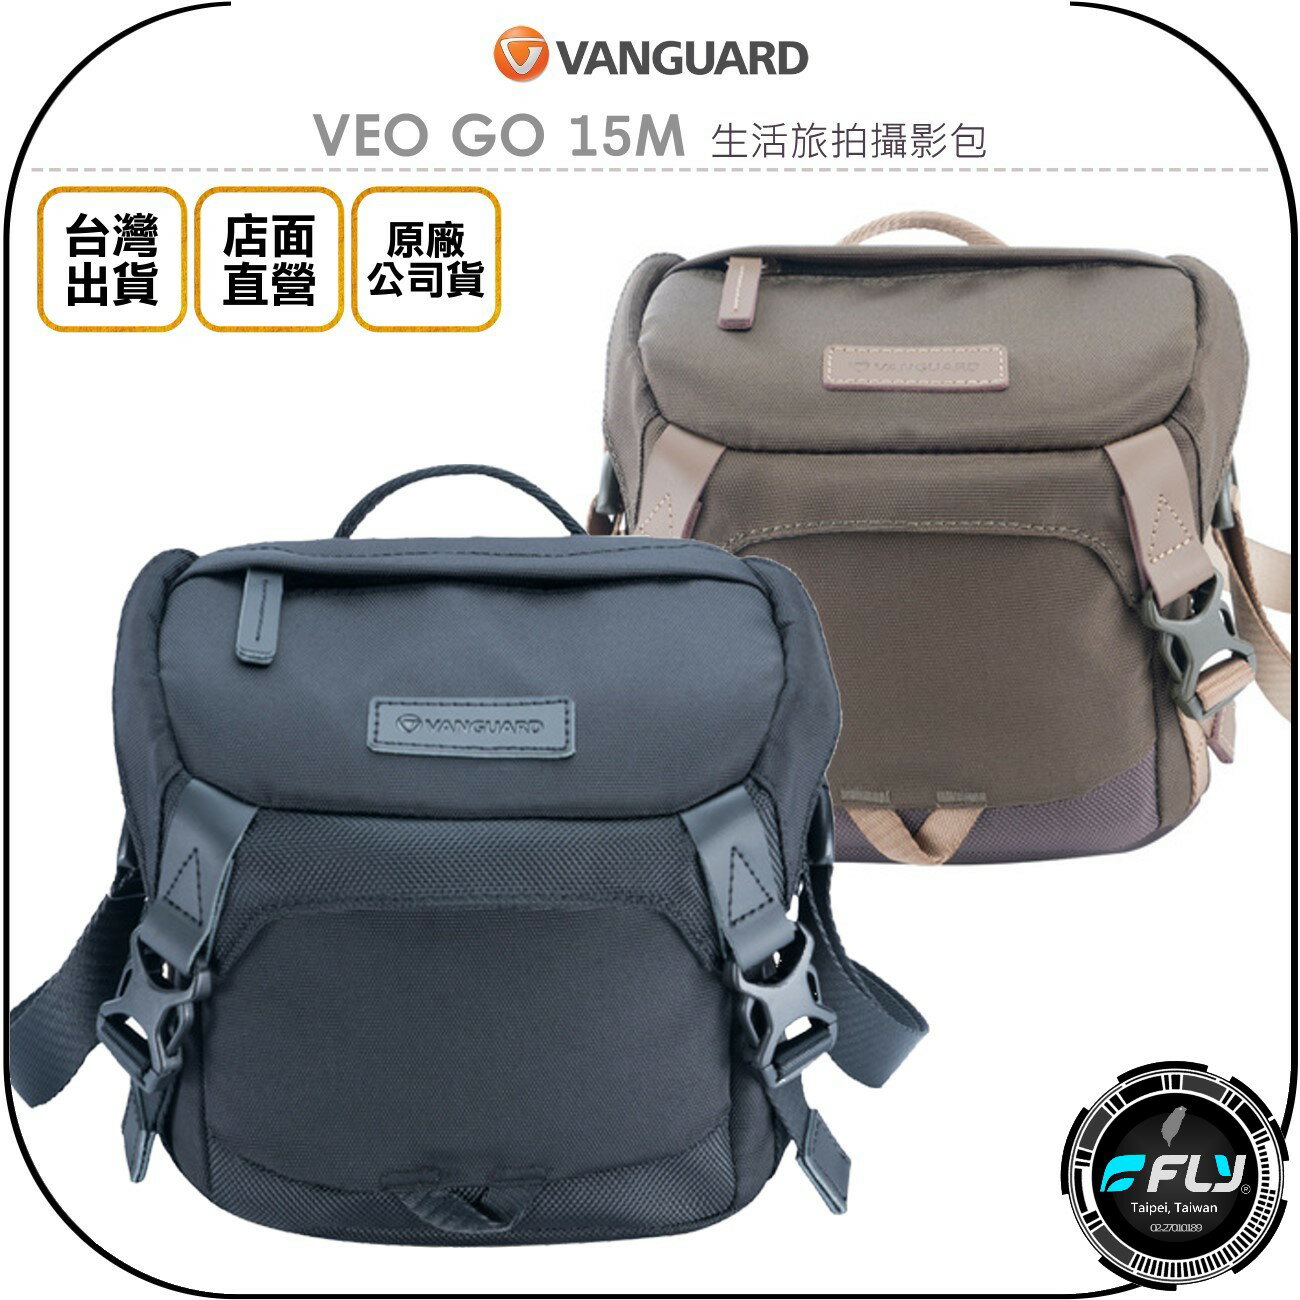 《飛翔無線3C》VANGUARD 精嘉 VEO GO 15M 生活旅拍攝影包◉公司貨◉單眼側背包◉相機斜背包